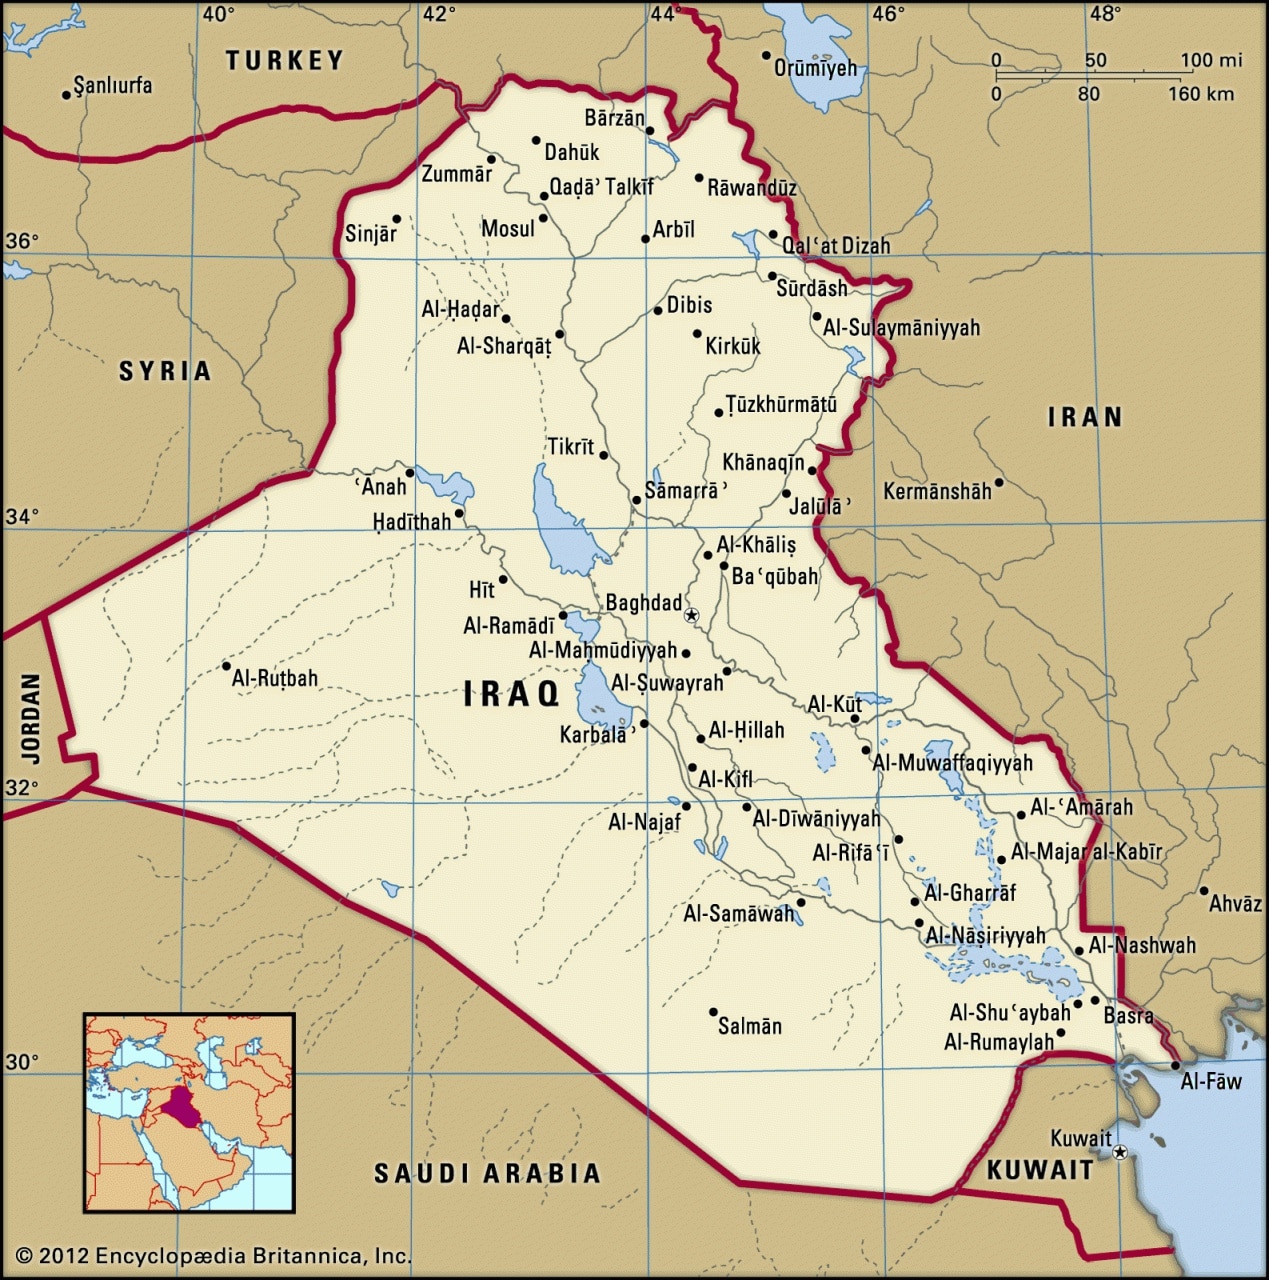 الفرق بين خريطة العراق القديمة والجديدة